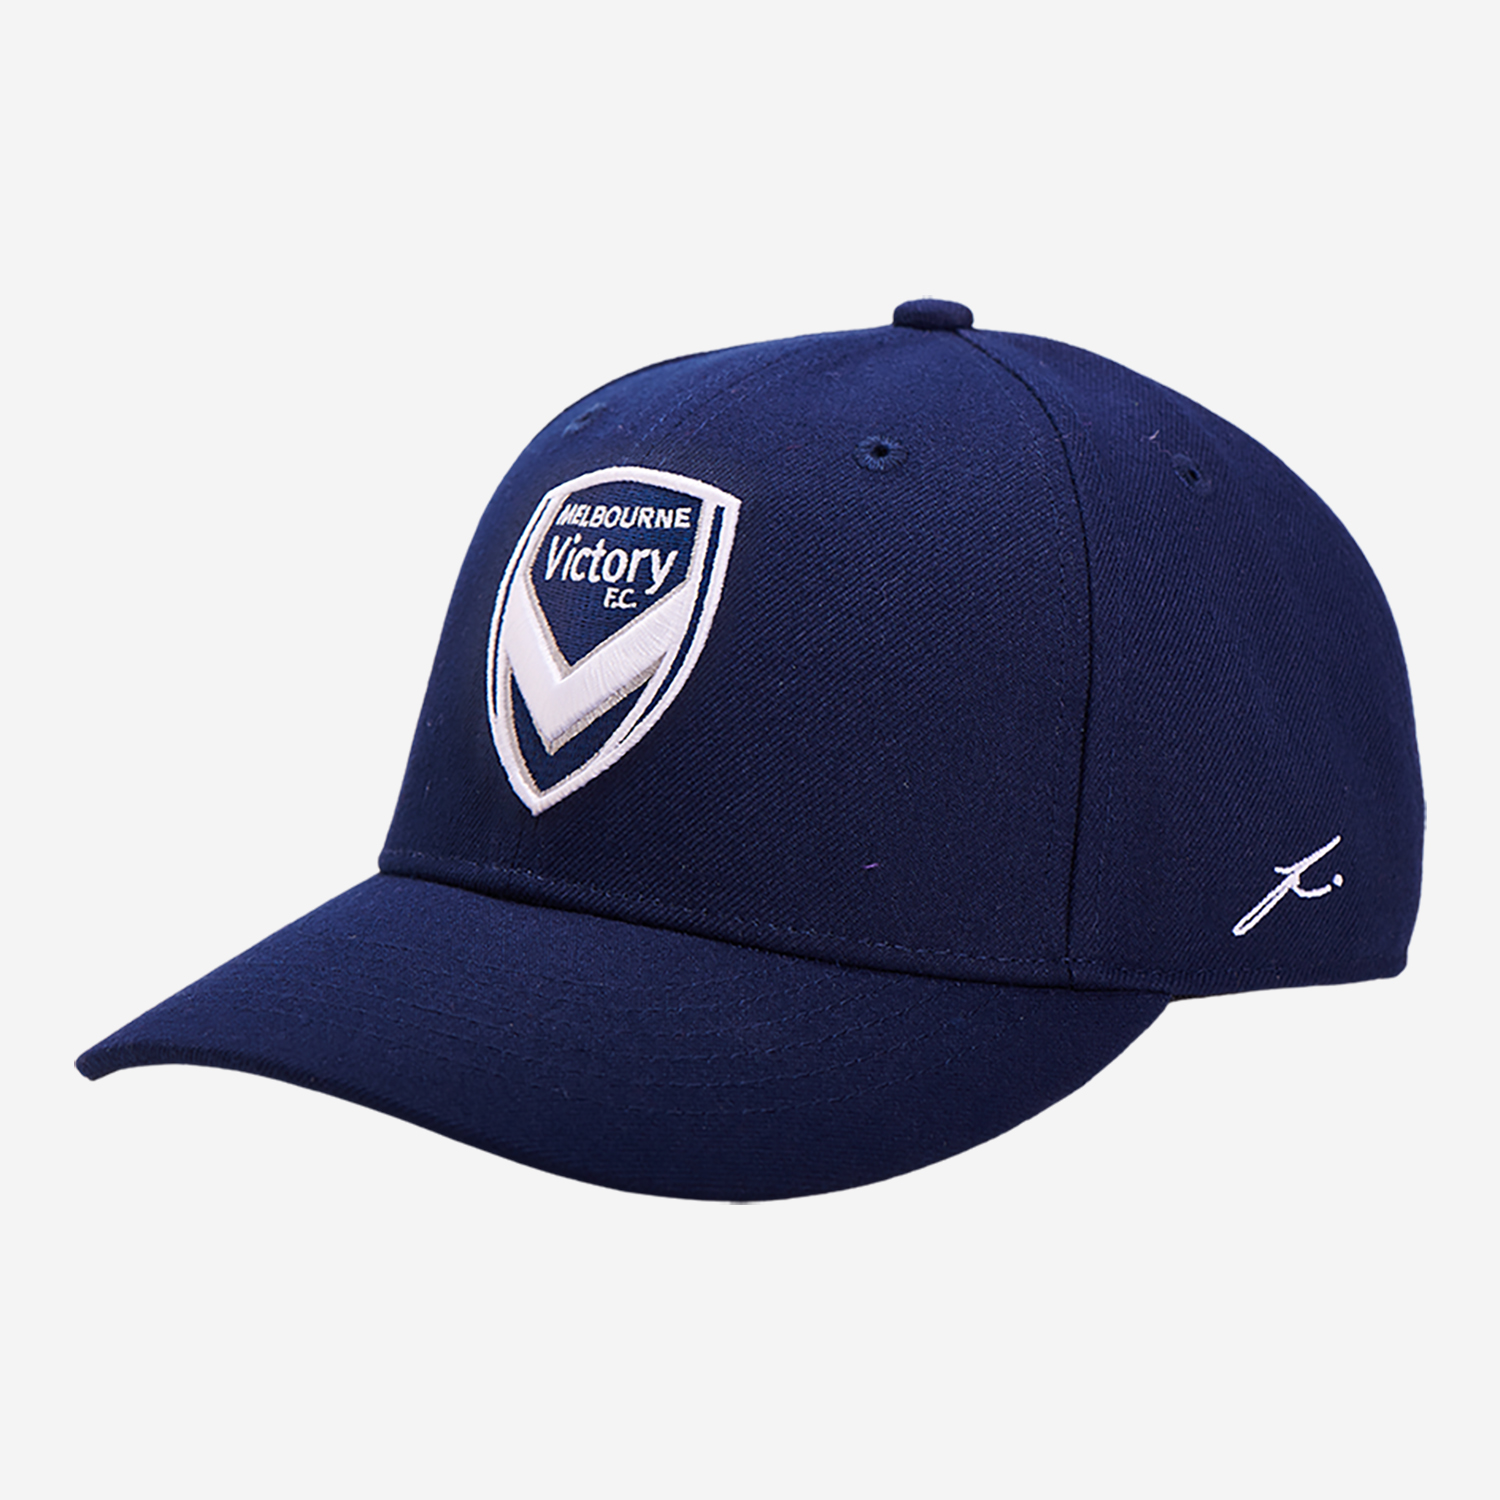 Melbourne Victory Cap